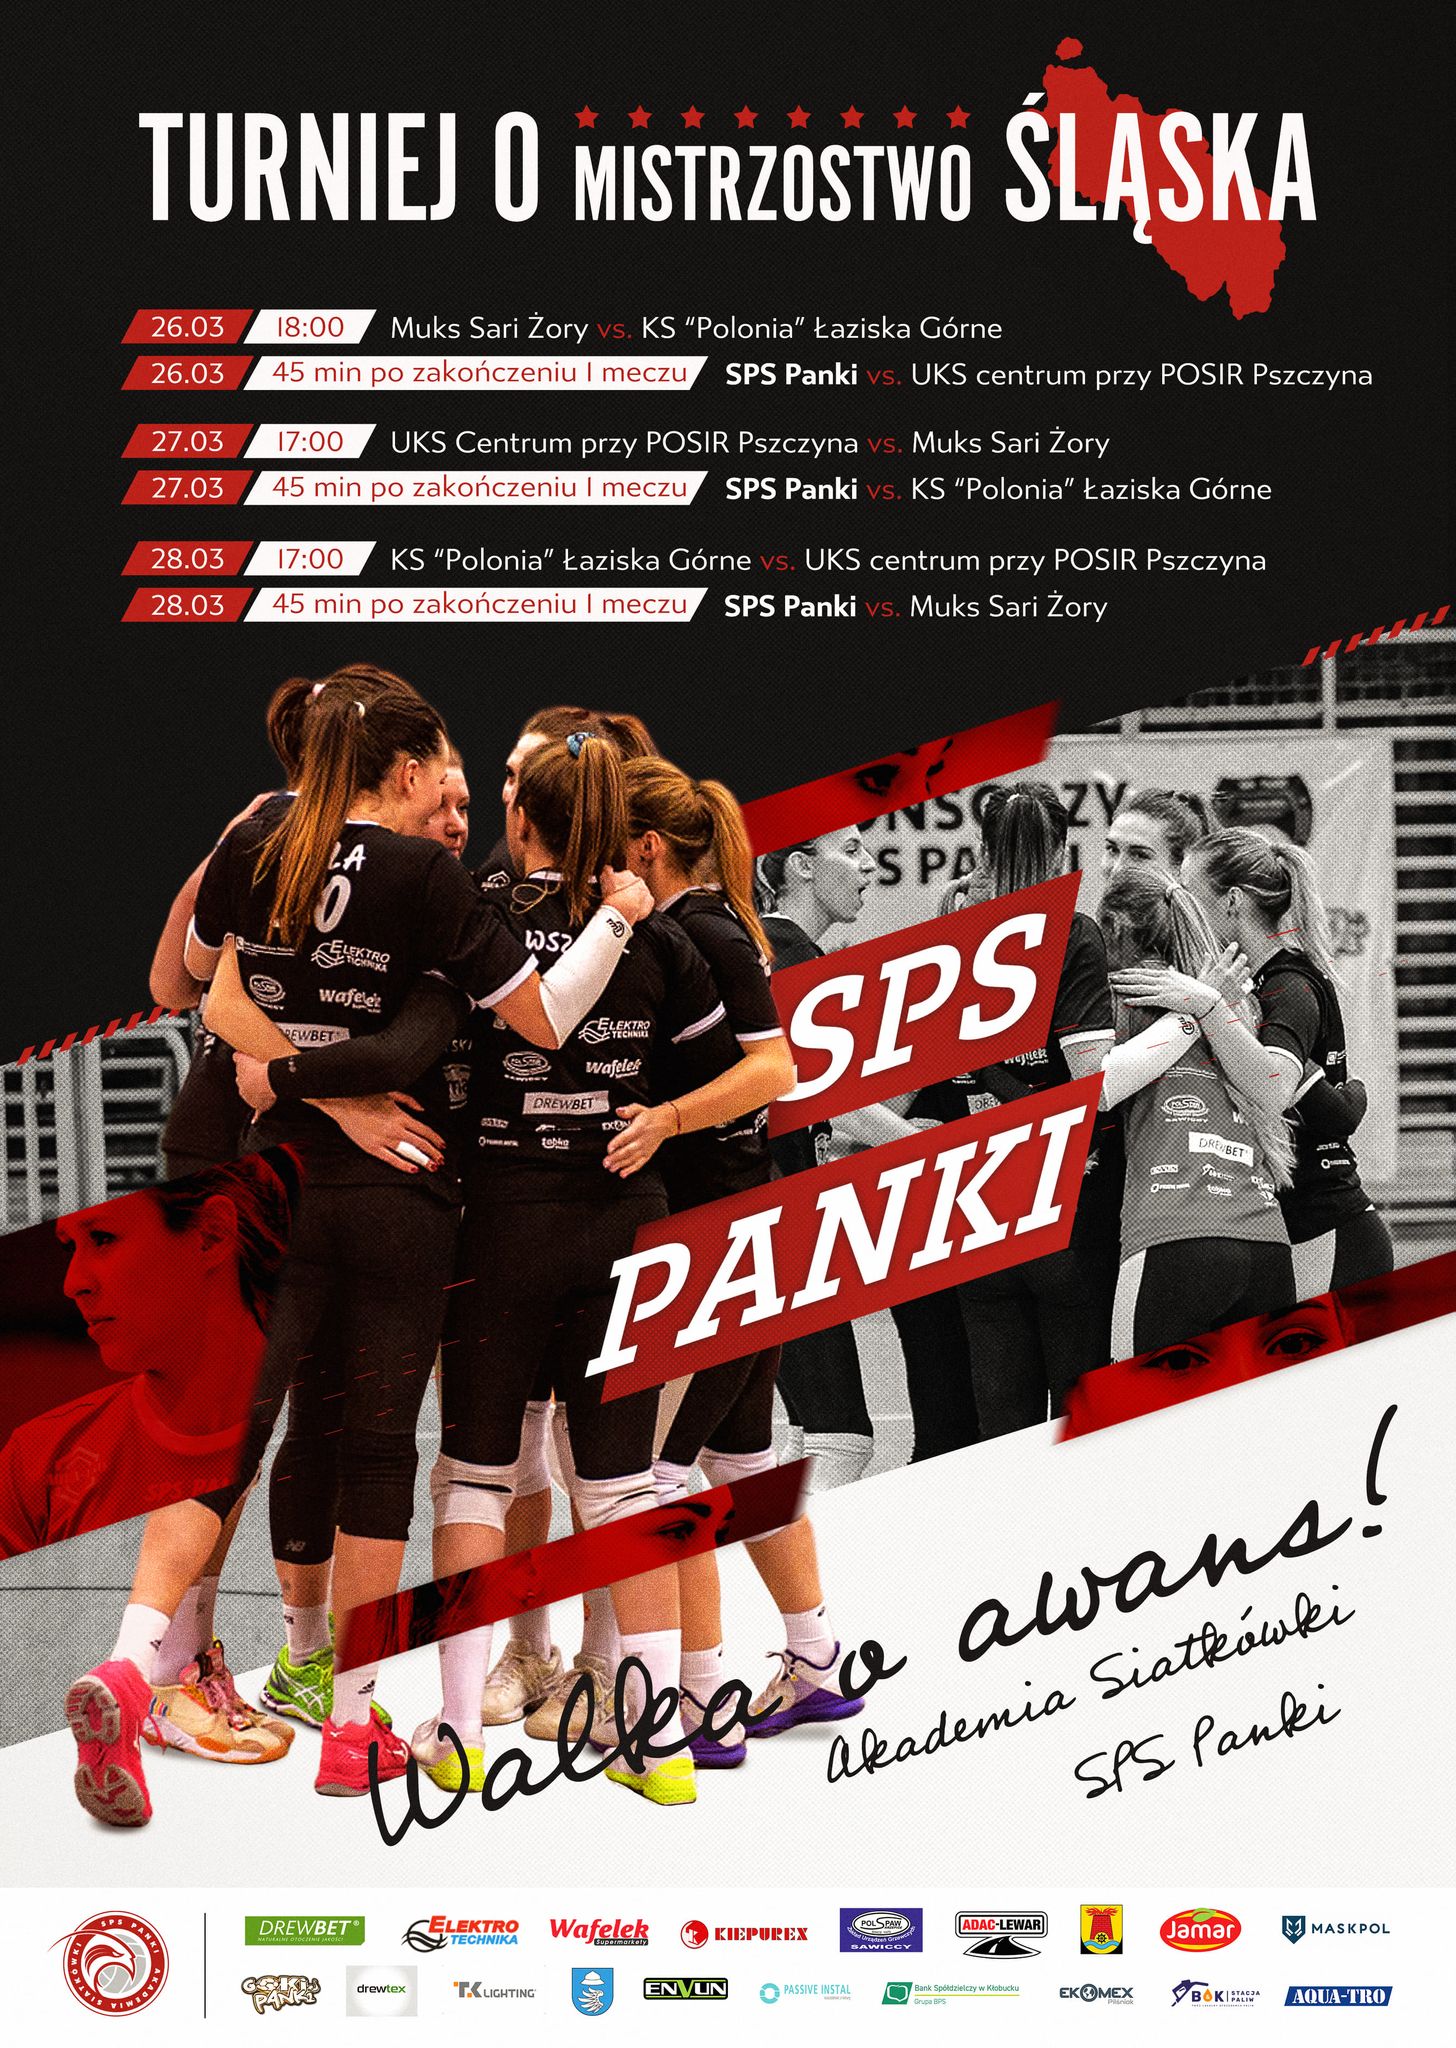 Akademia Siatkówki SPS Panki organizuje turniej finałowy o mistrzostwo 1 ligi kobiet i awans 1